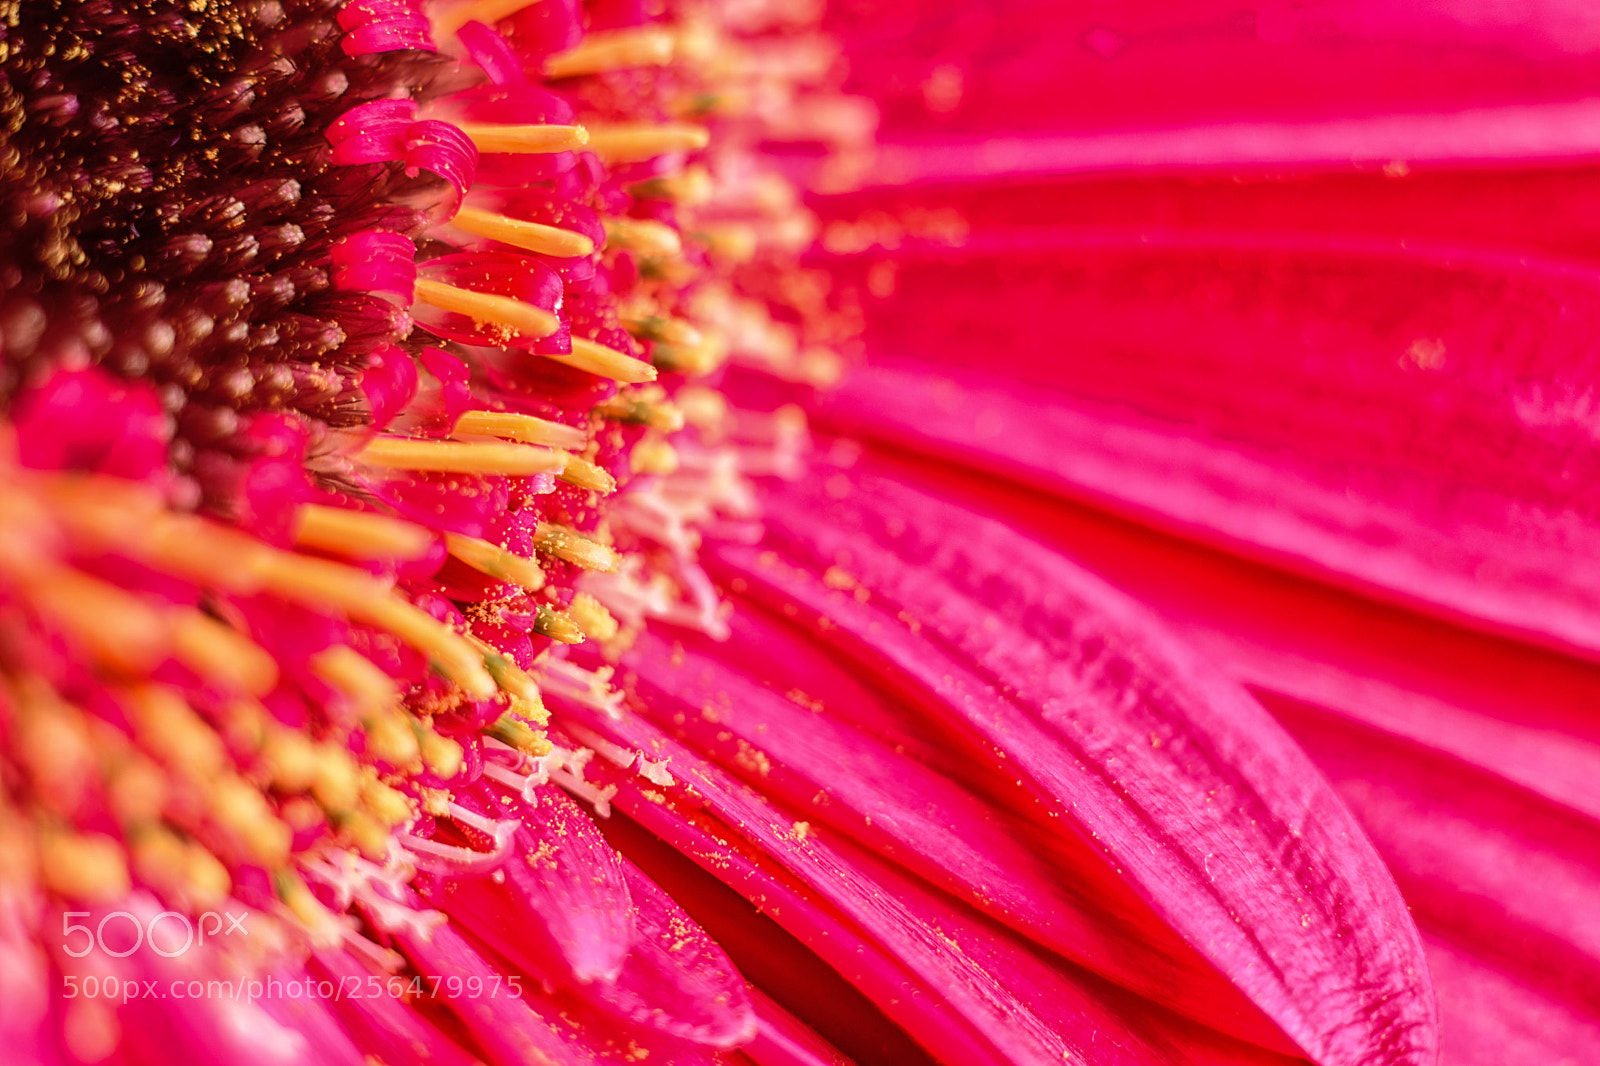 Nikon D5500 sample photo. Pink gerbera daisy photography